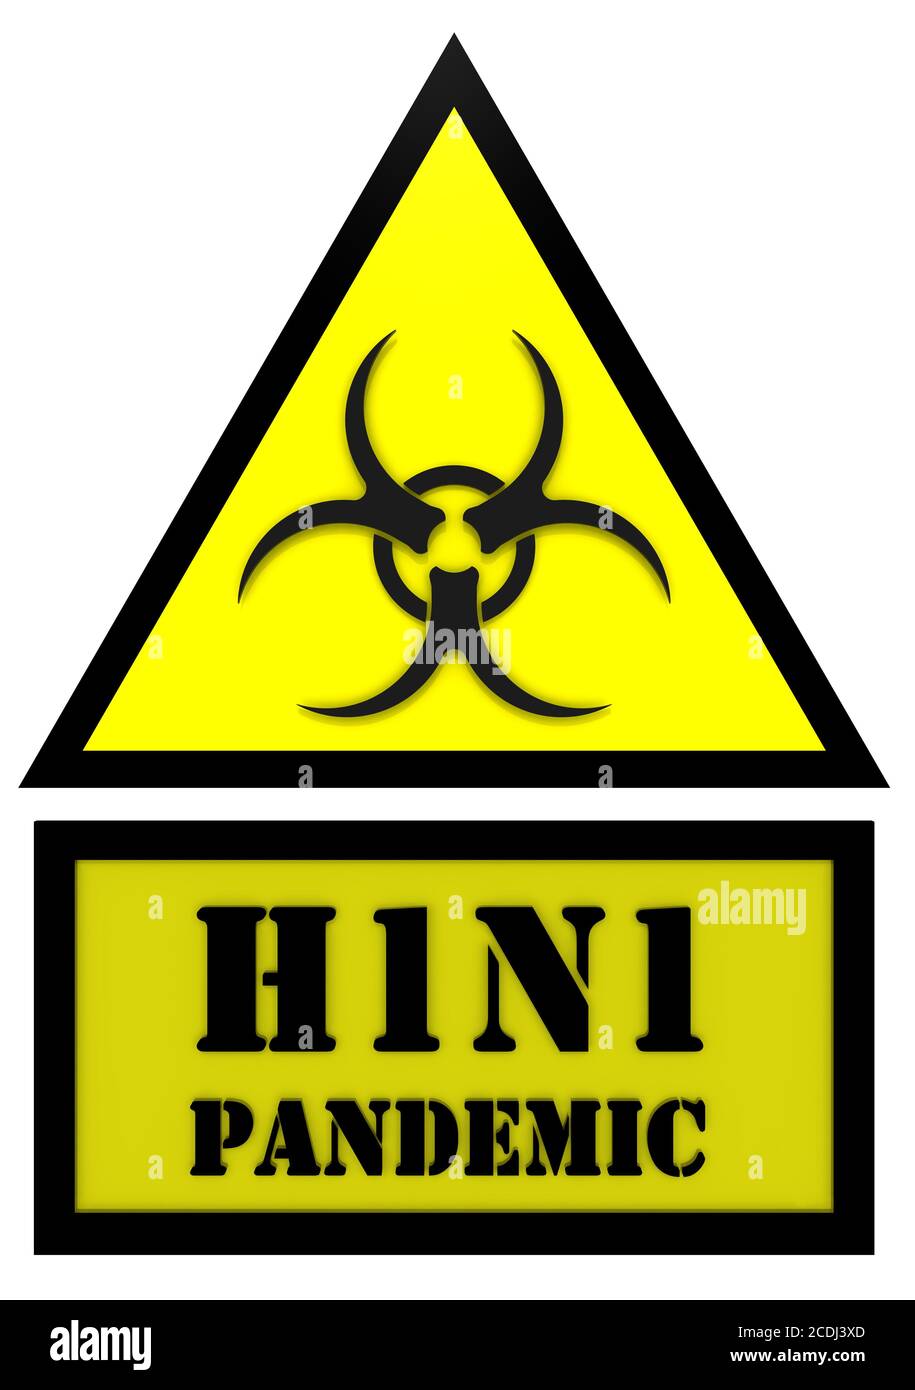 Signe de l'épidémie de grippe H1N1. Panneau d'avertissement jaune avec symbole de danger biologique et les mots « pandémie H1N1 ». Isolé. Illustration 3D Banque D'Images